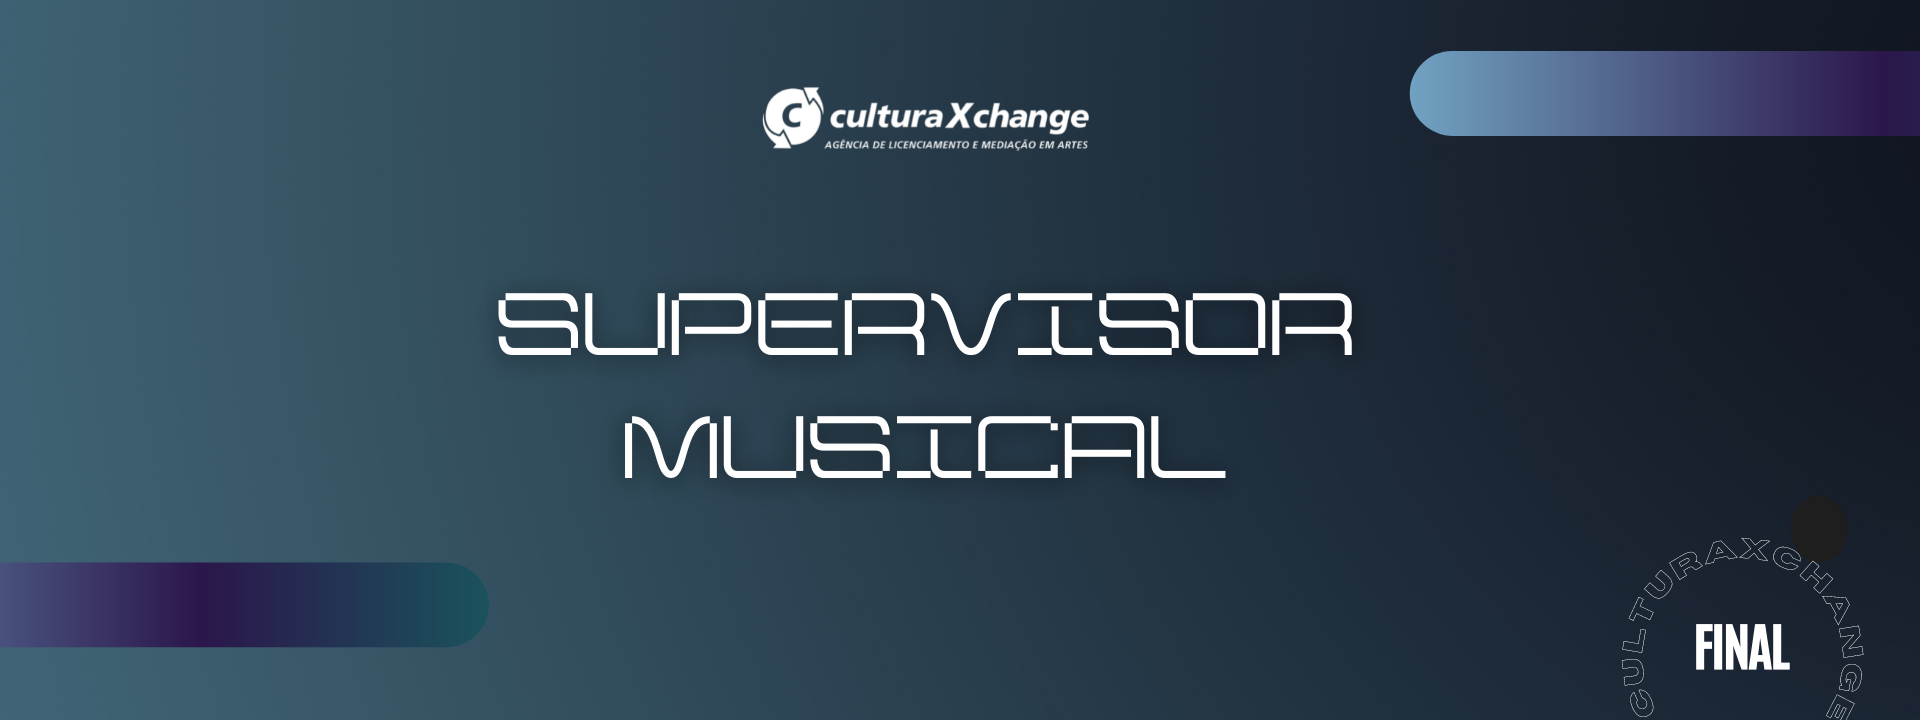 Imagem de um banner relacionado ao post de blog "Supervisor Musical"